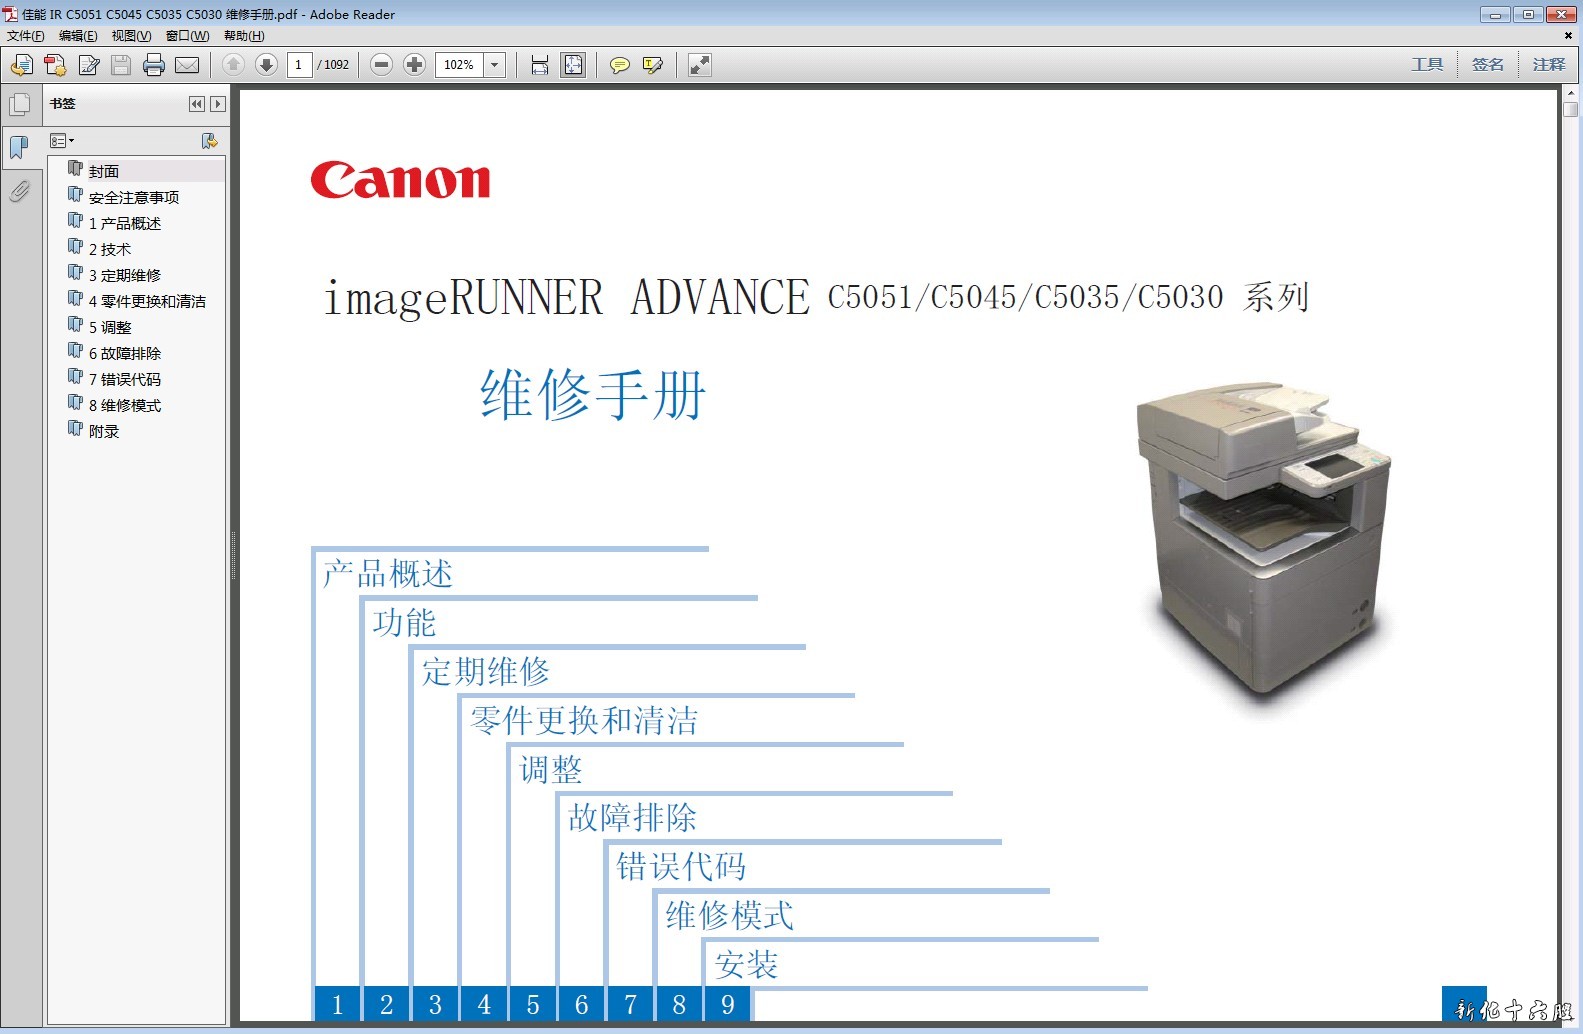 佳能iR ADV C5051 C5045 C5035 C5030 彩色复印机中文维修手册.jpg